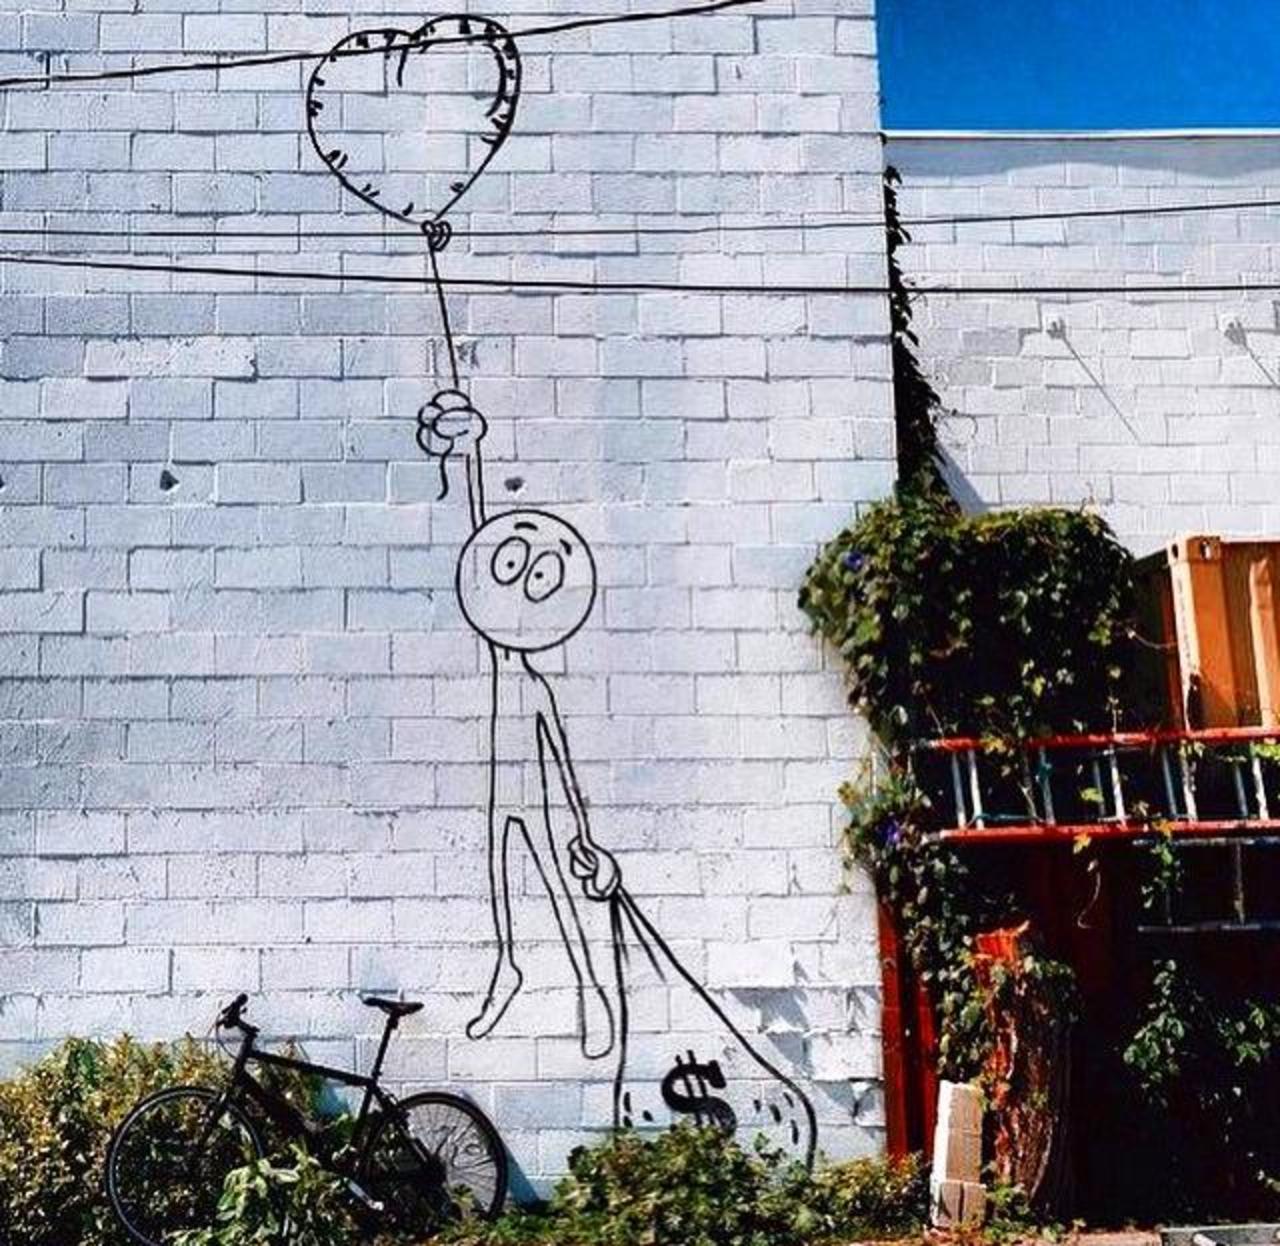 Love or money?
Street Art by Kaia Spire in LA 

#art #arte #graffiti #streetart http://t.co/rrncRFrSBU